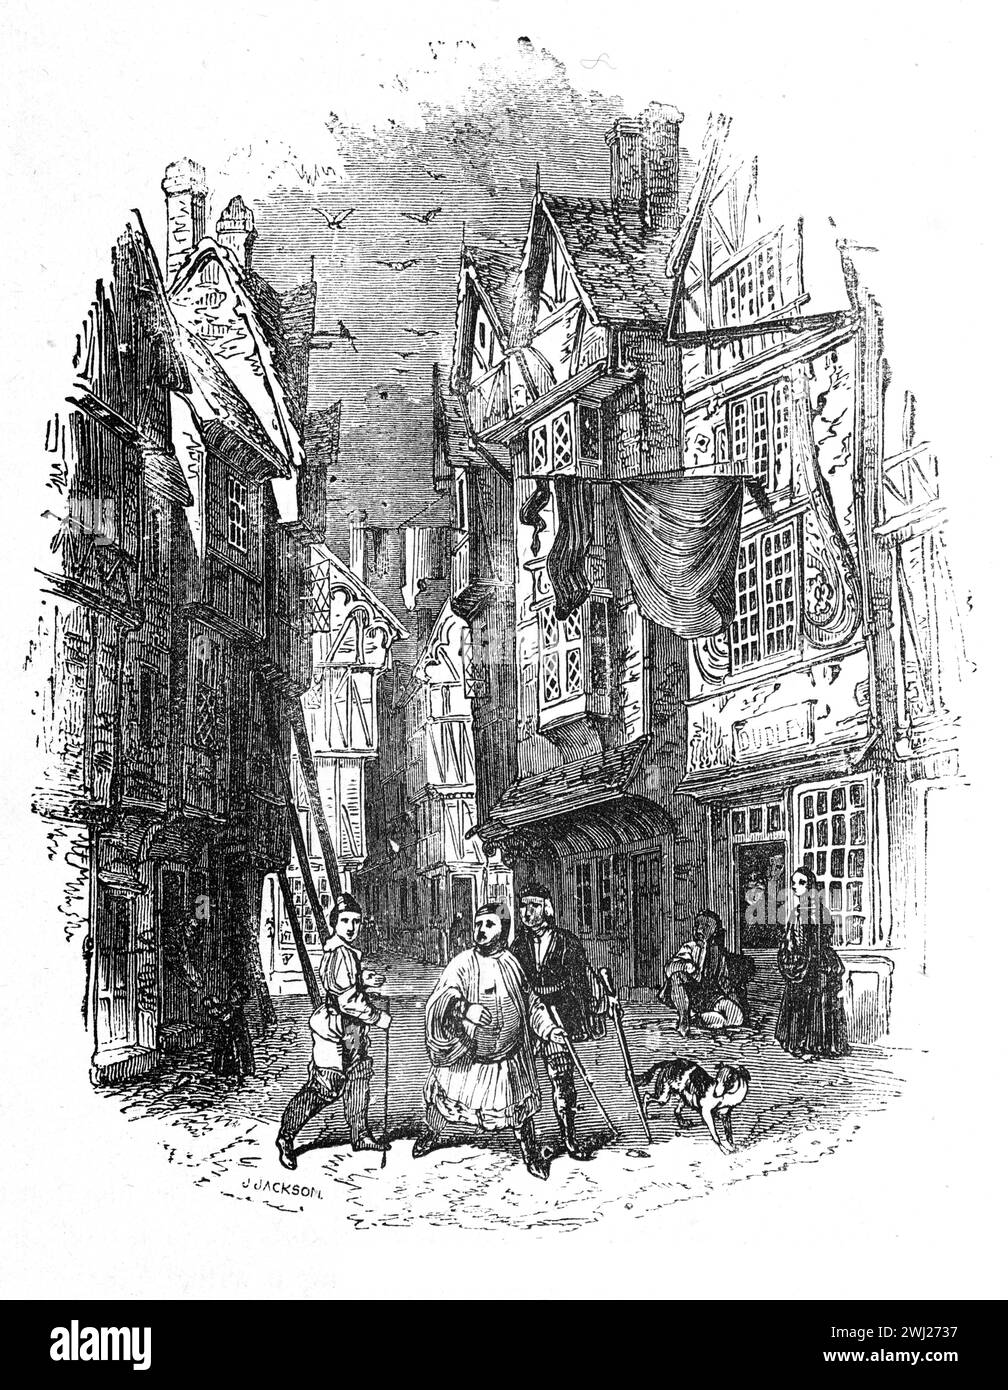 Une rue de Londres du 16ème ou 17ème siècle. Illustration en noir et blanc de la 'vieille Angleterre' publiée par James Sangster en 1860. Banque D'Images